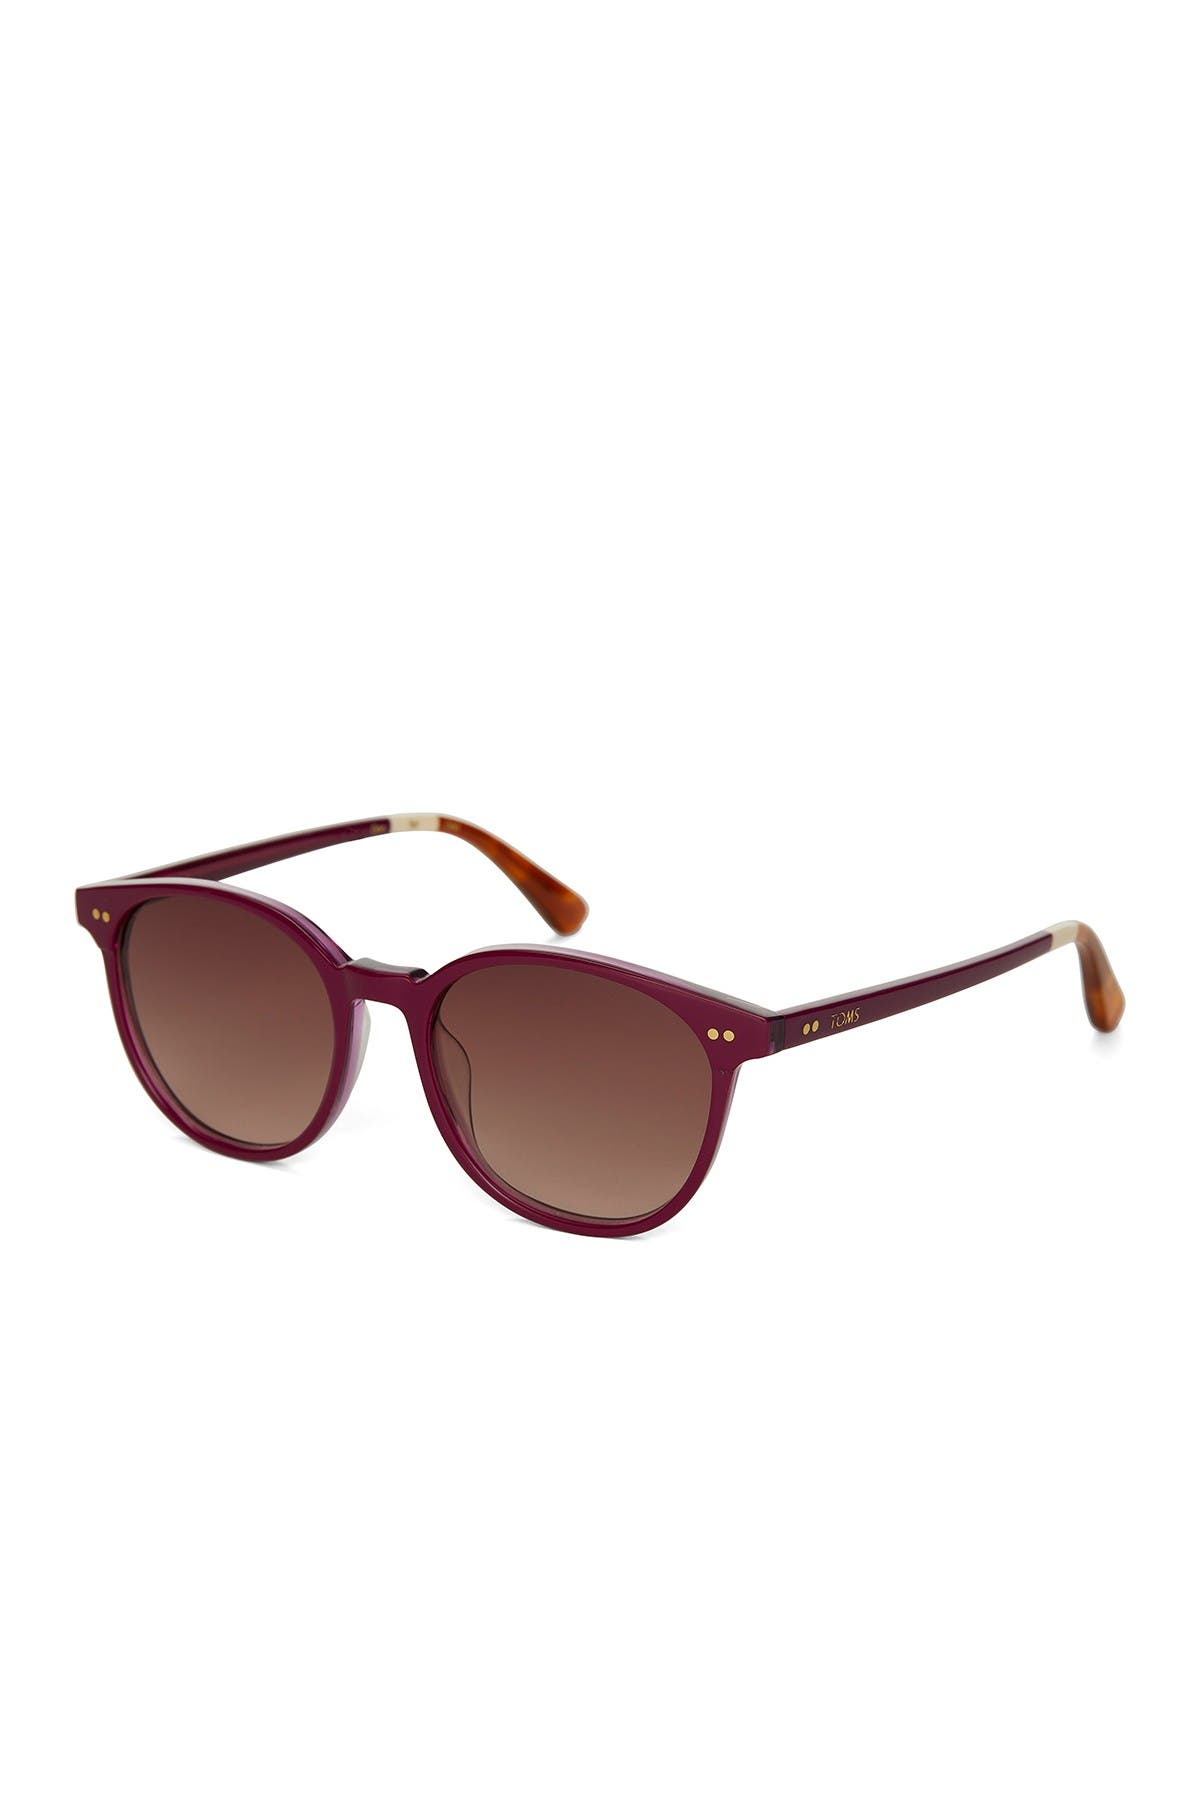 Toms Bellini 52mm Round Sunglasses In Medium Purple